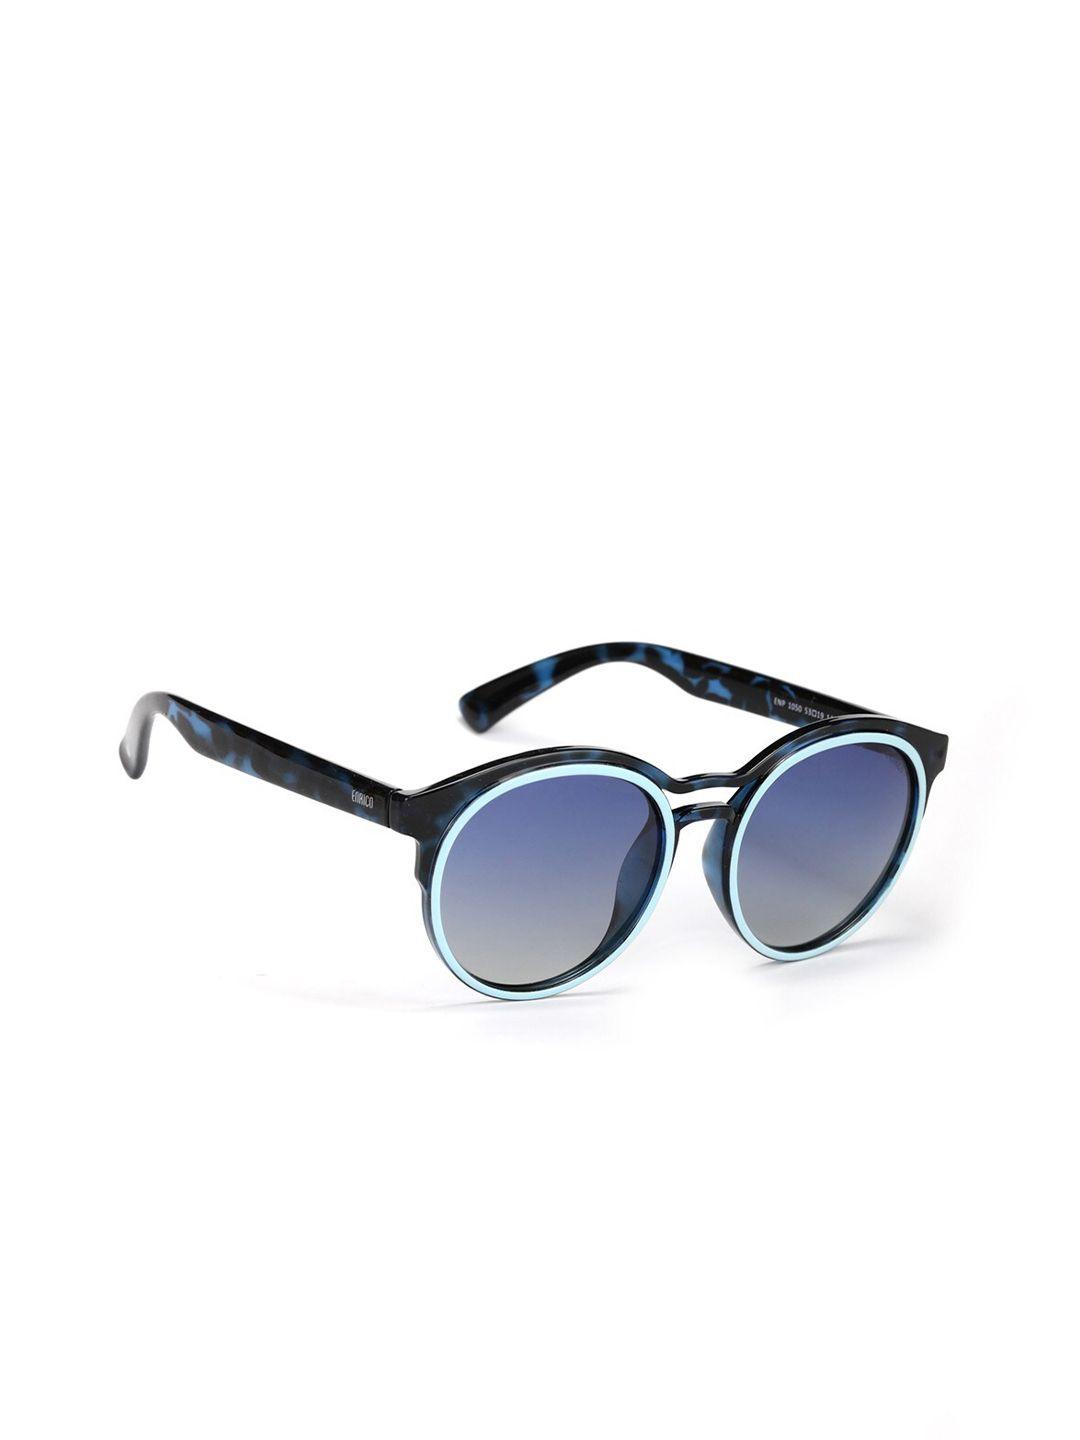 enrico women blue lens & blue round sunglasses - en p 1050 c2-blue